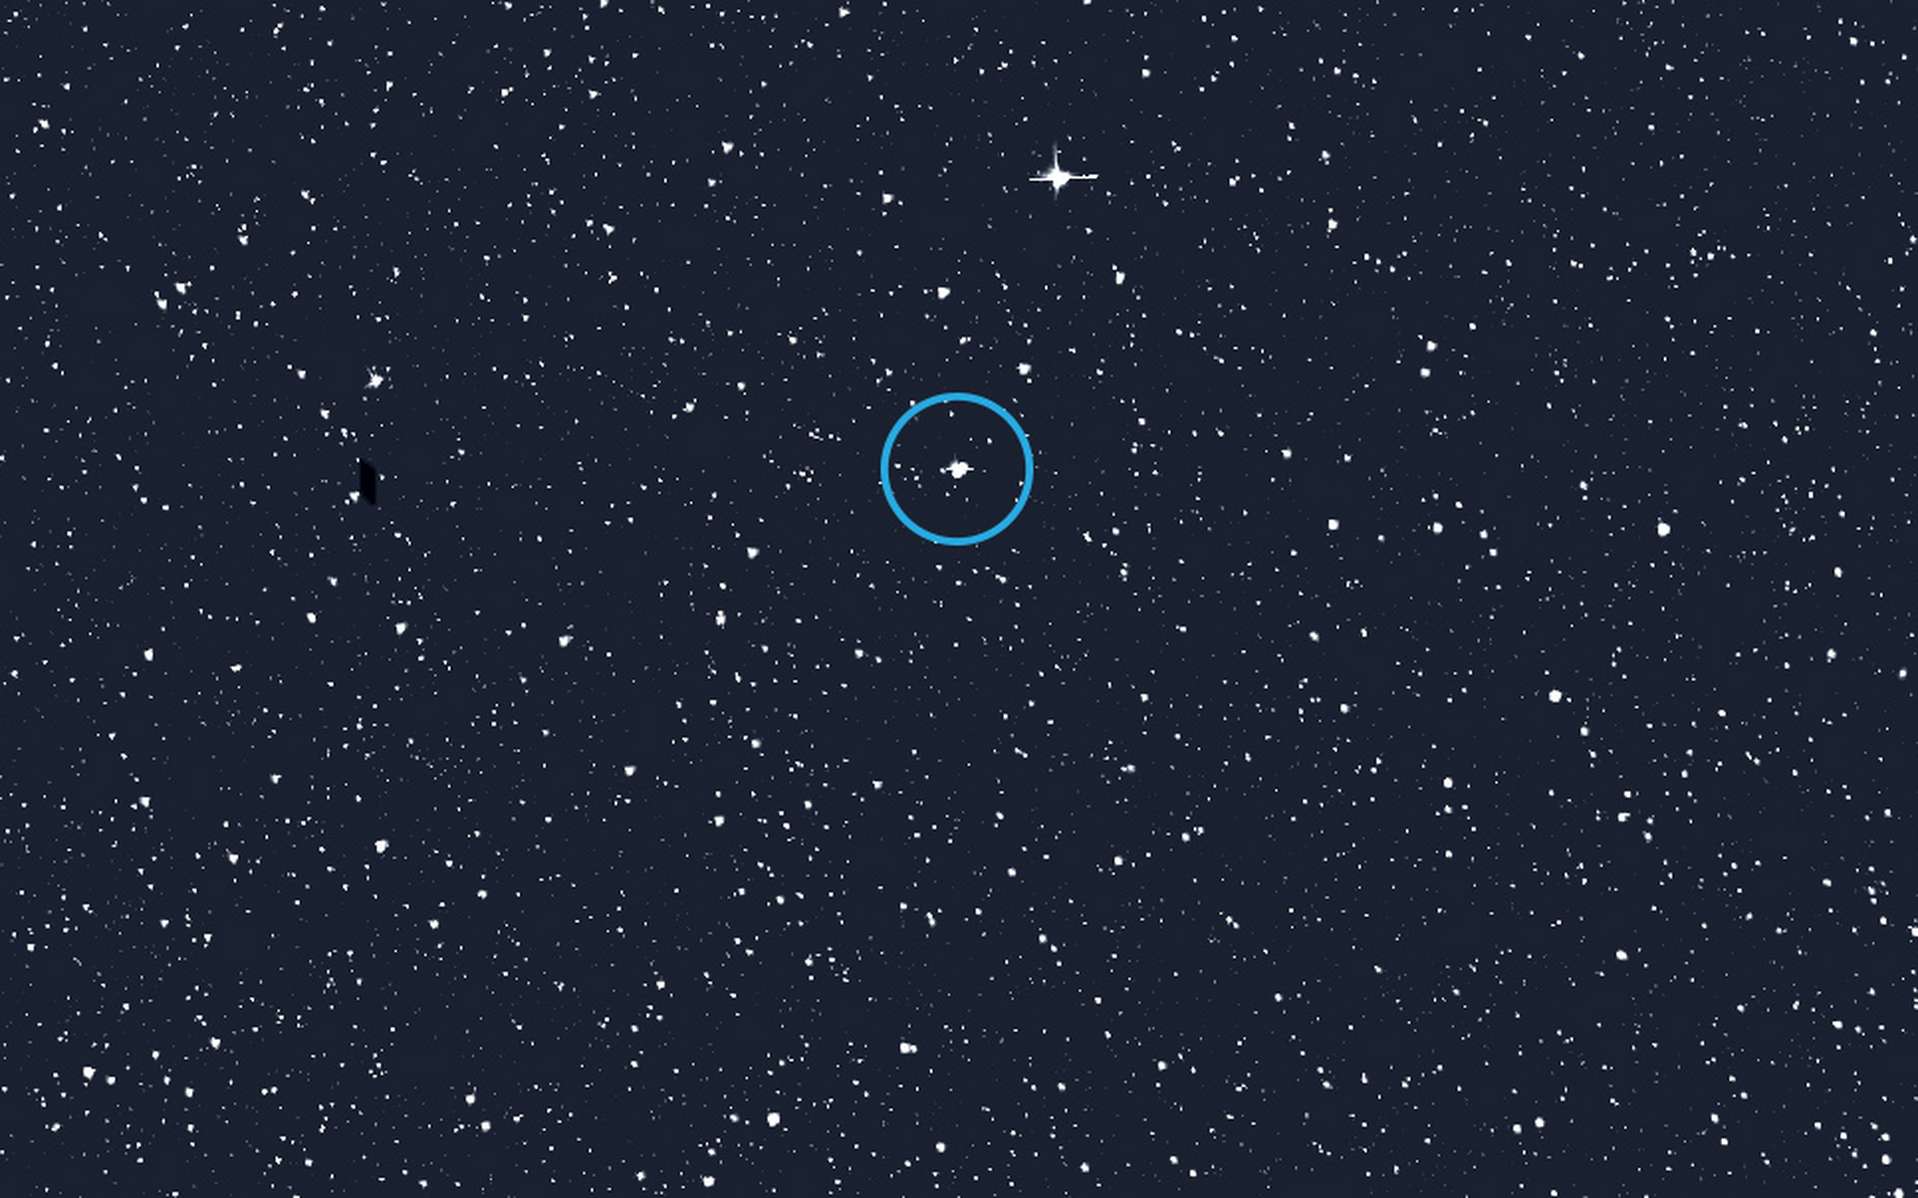 L'étoile Alpha Draconis (encerclée), également connue sous le nom de Thuban dans l'ancienne Égypte, est connue depuis longtemps pour être un système binaire. Maintenant, les données du Tess de la Nasa montrent que ses deux étoiles subissent des éclipses mutuelles. © Nasa, MIT, Tess